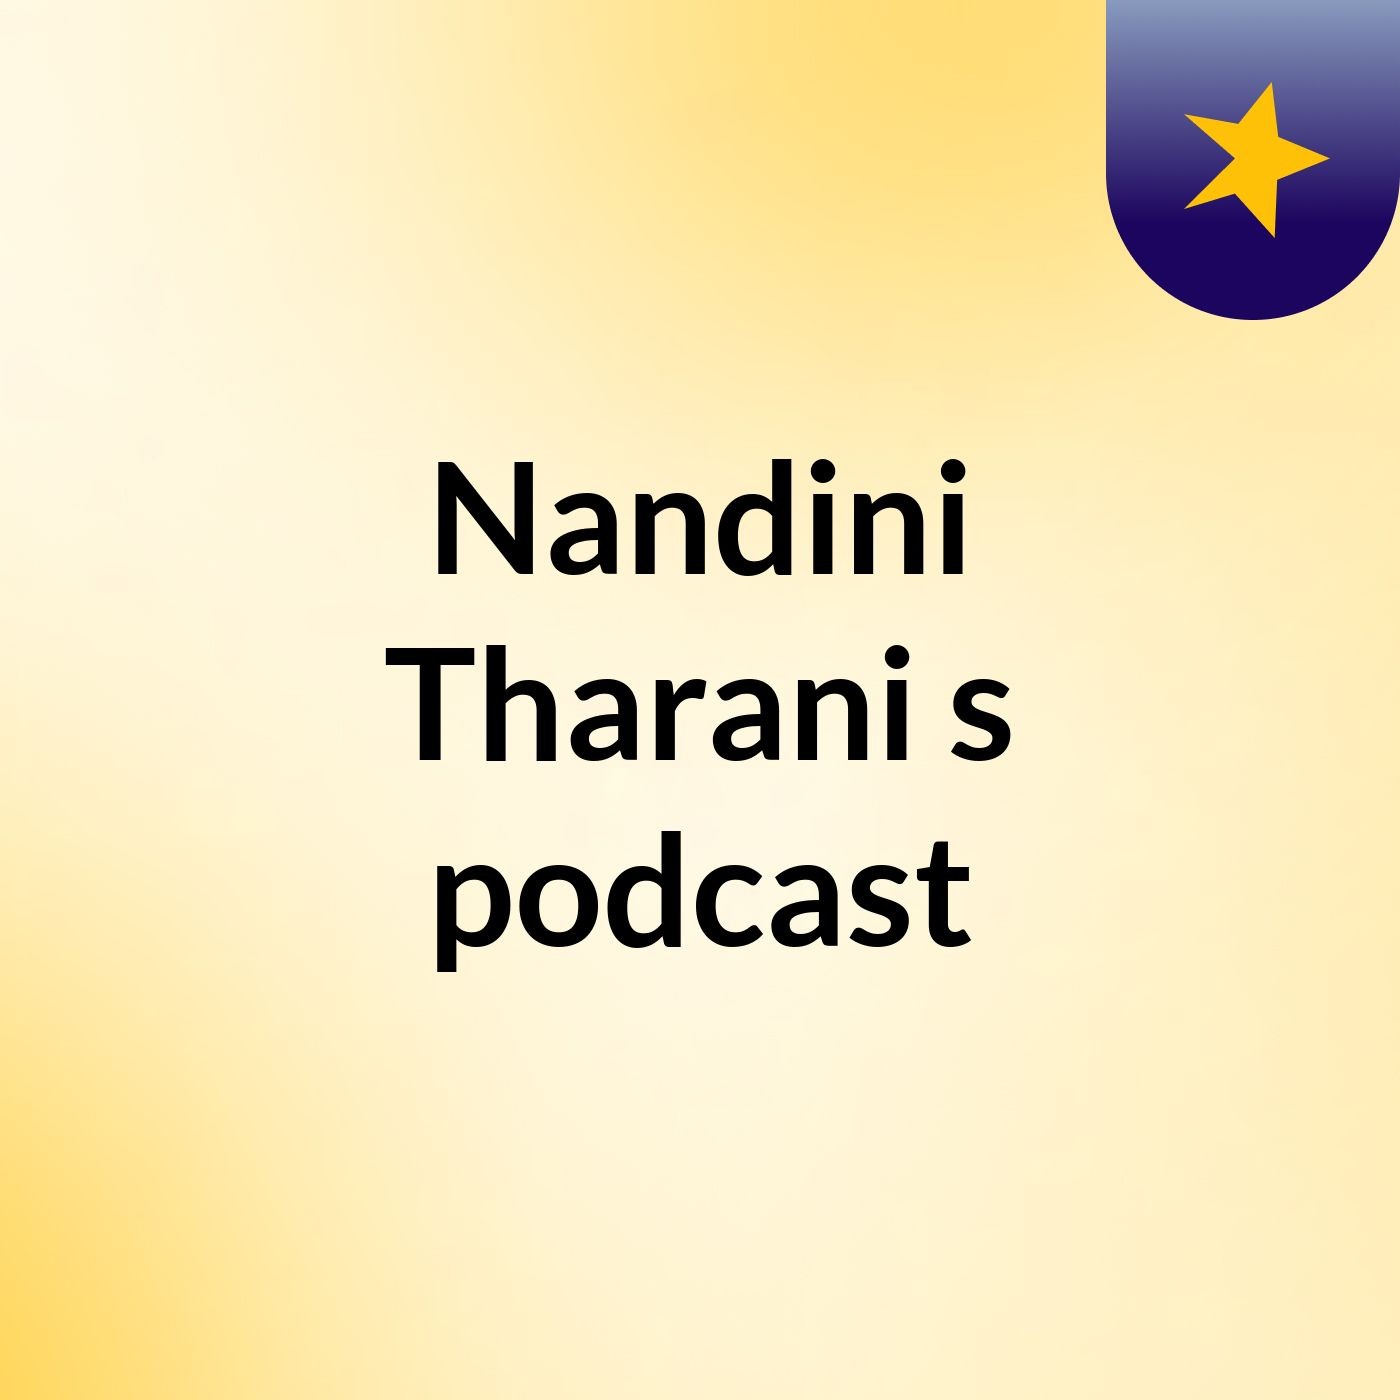 Nandini Tharani's podcast